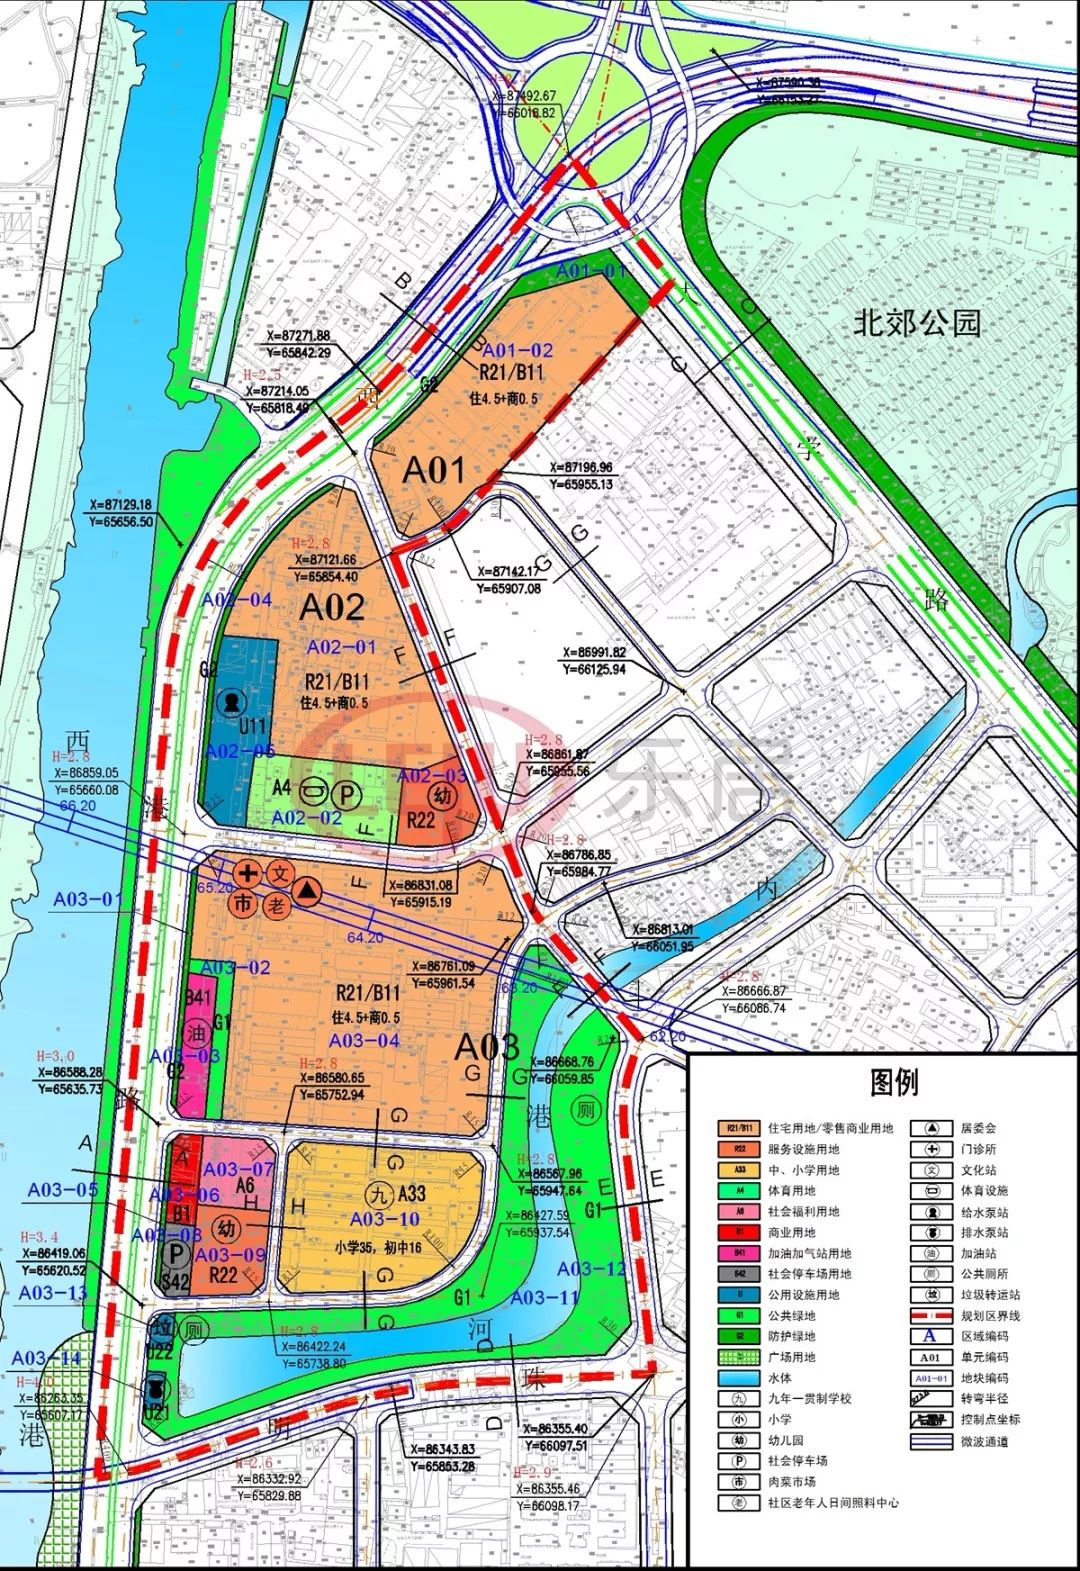 民生汕头两大片区规划已获政府批准总用地面积超125公顷